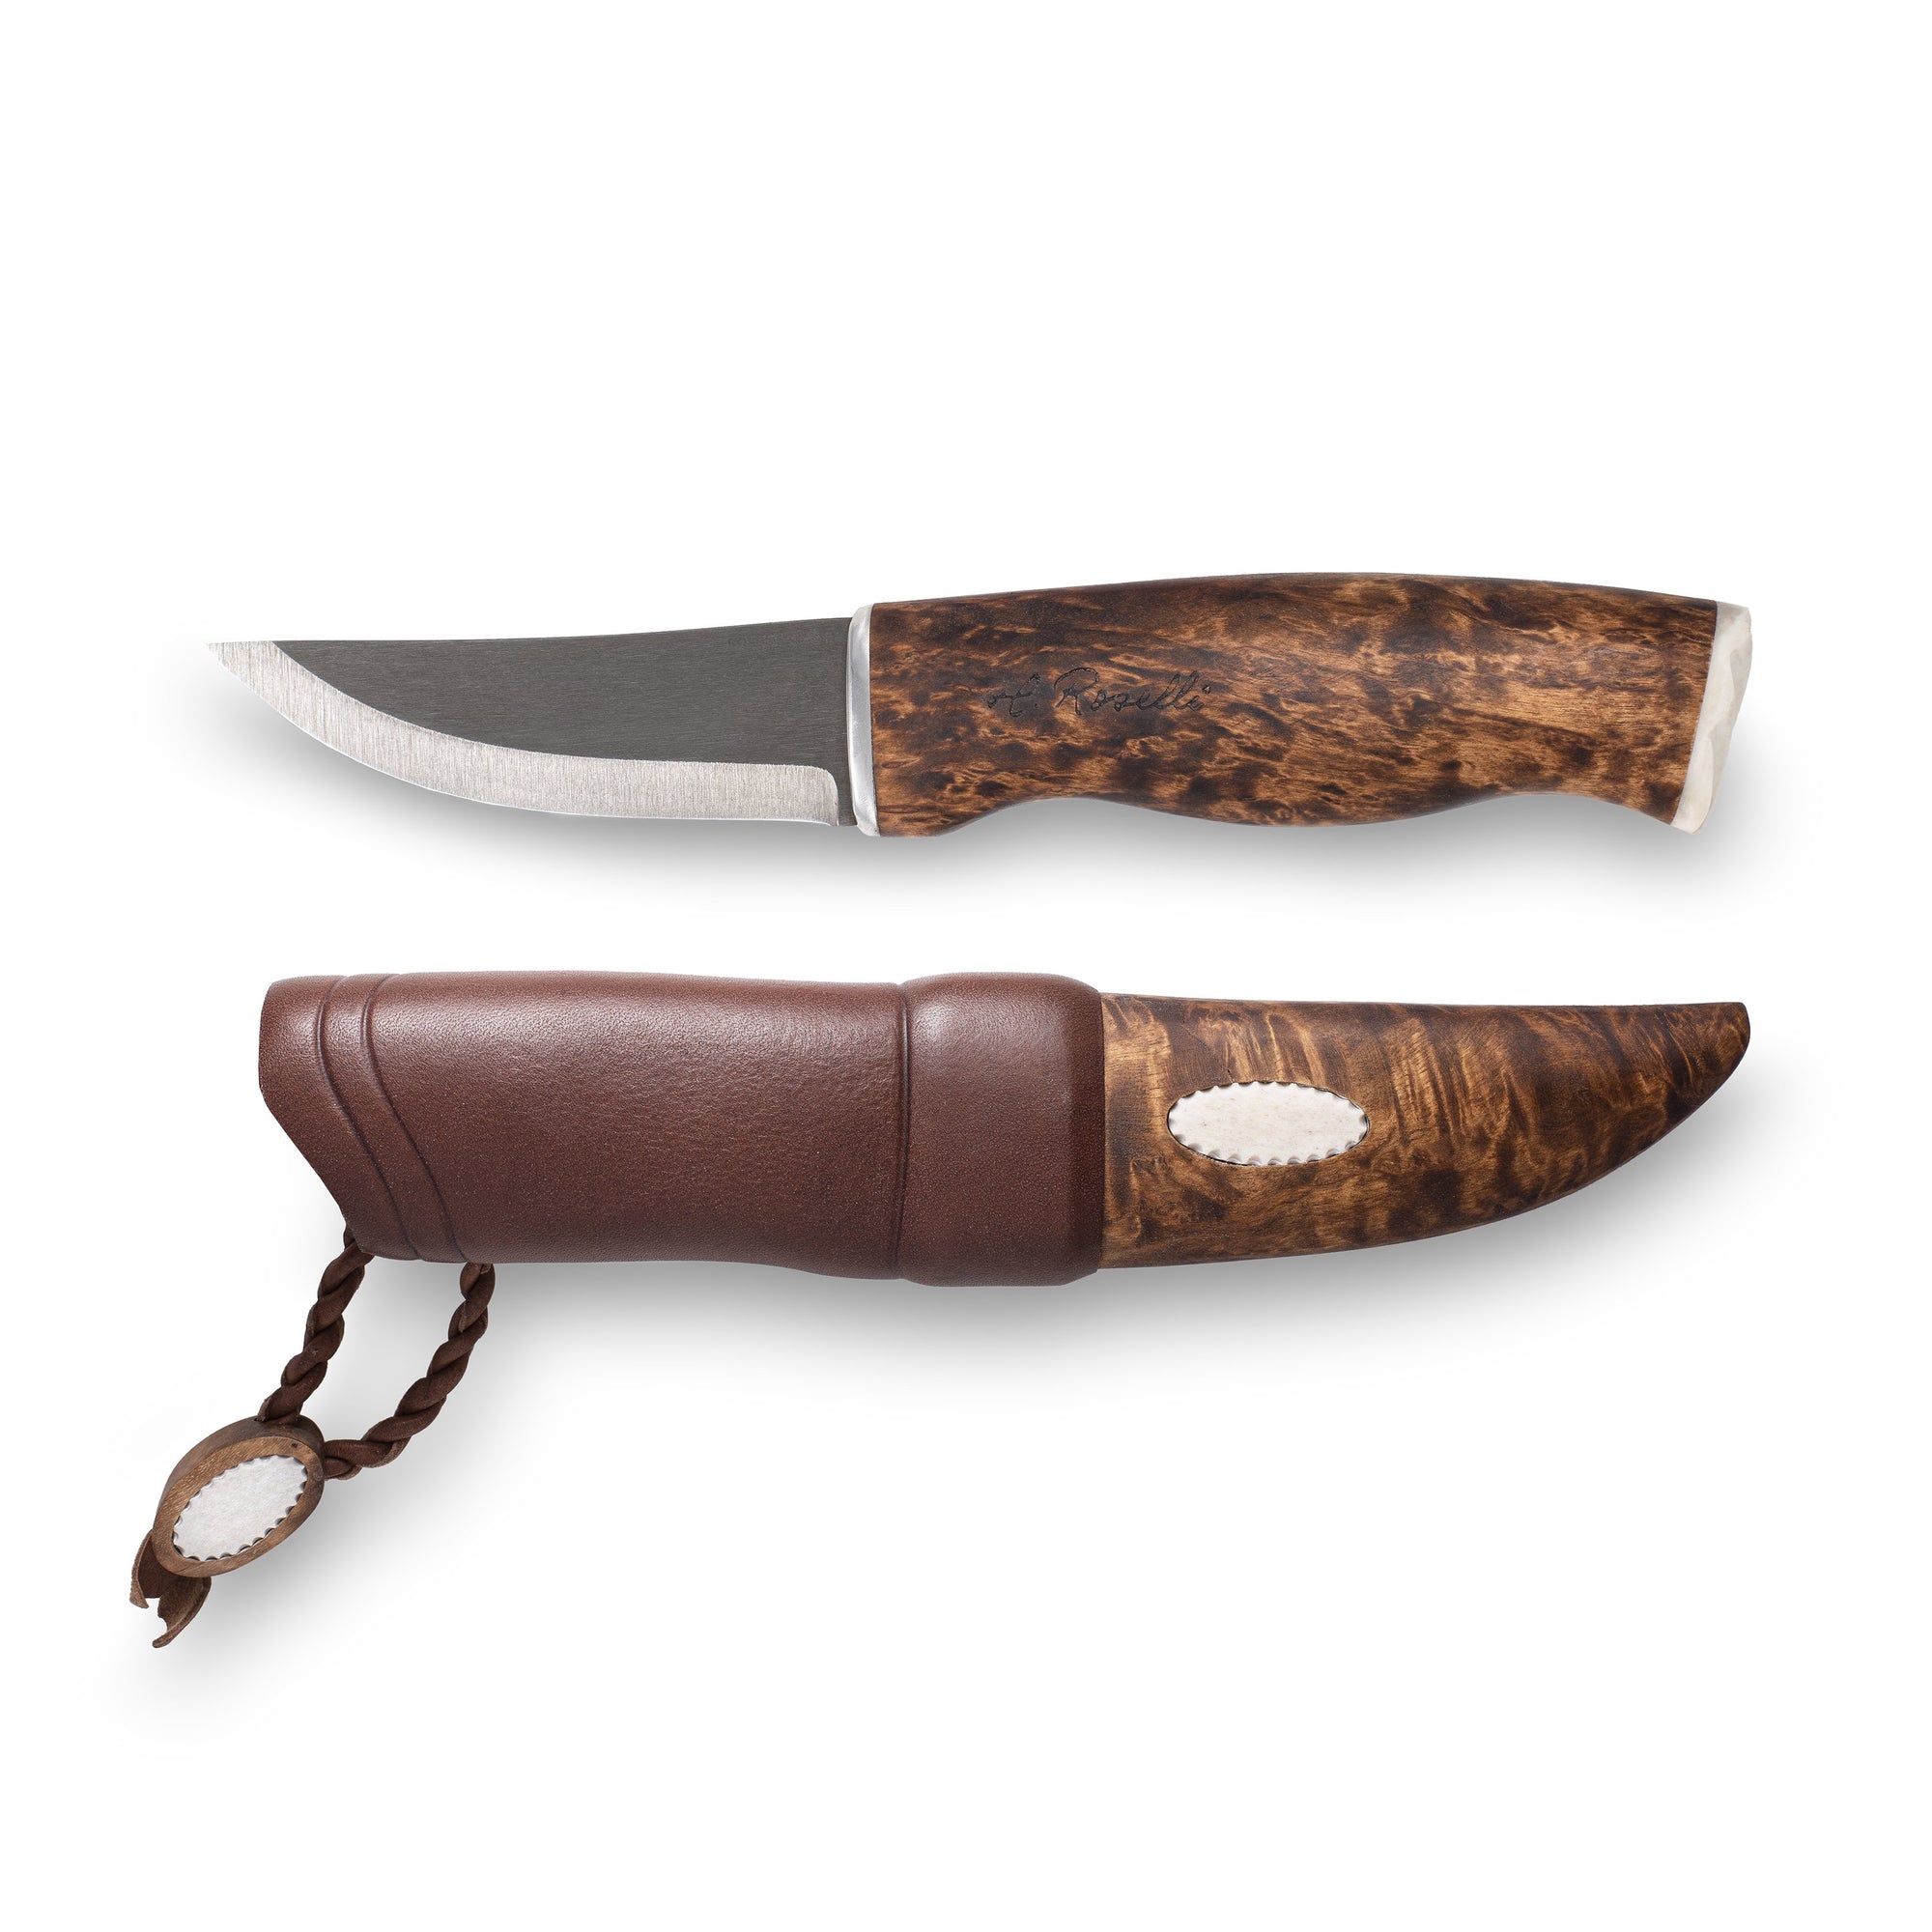 Finsk handgjord jaktkniv med detaljer av renhornsmycke från Roselli i modellen "hunting knife nalle renhorn"